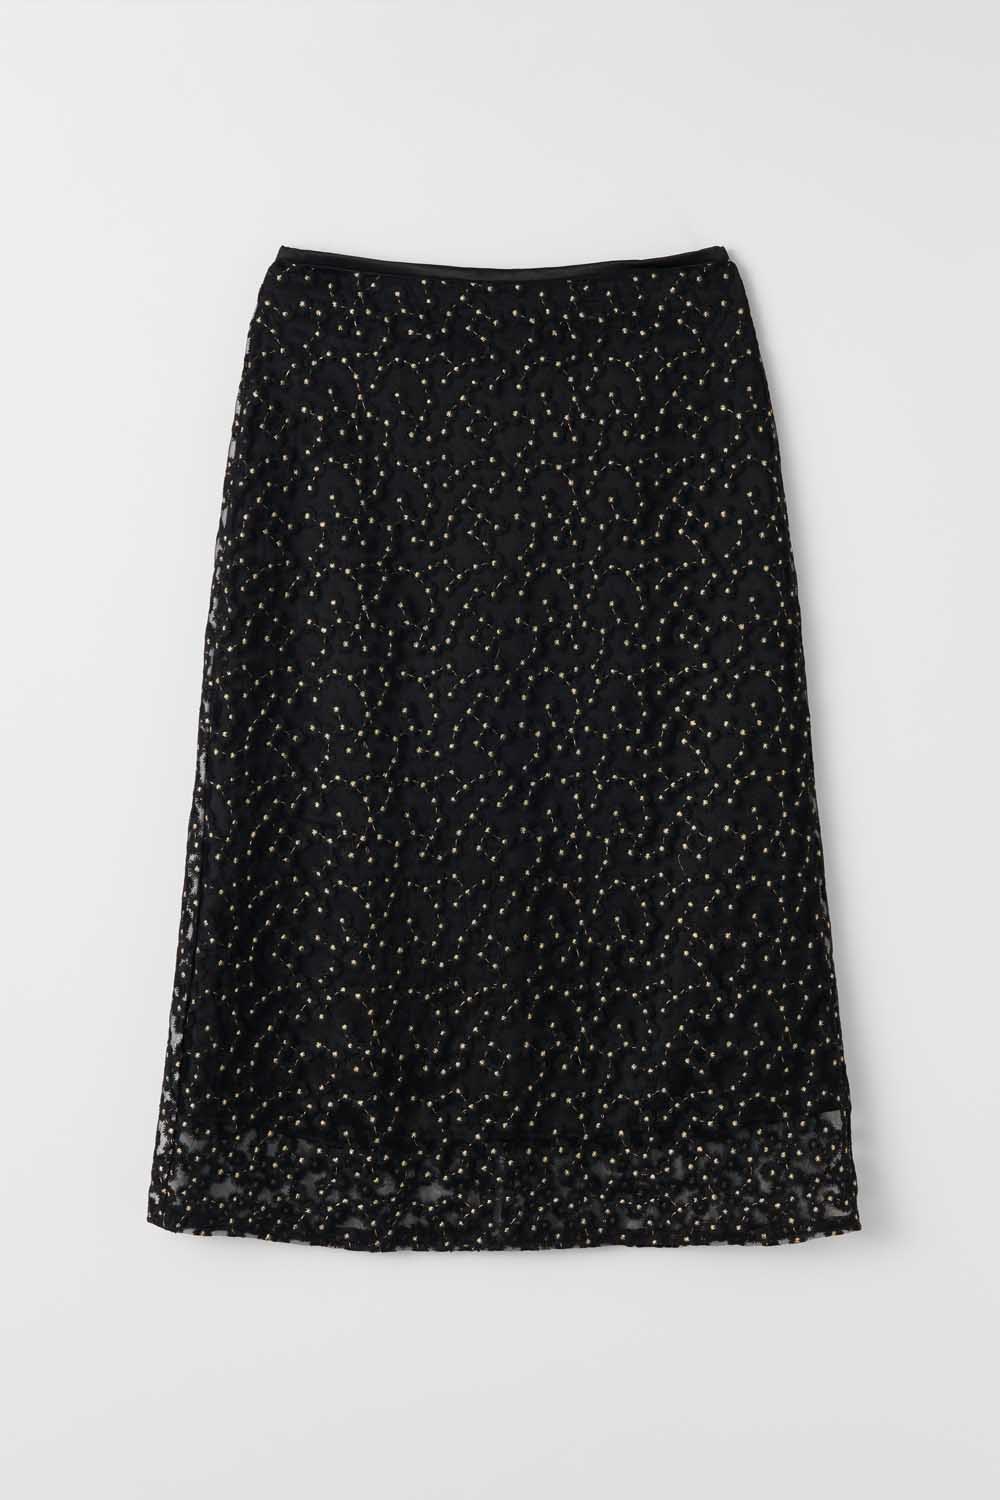 S Flower Pattern layerd Skirt_Black